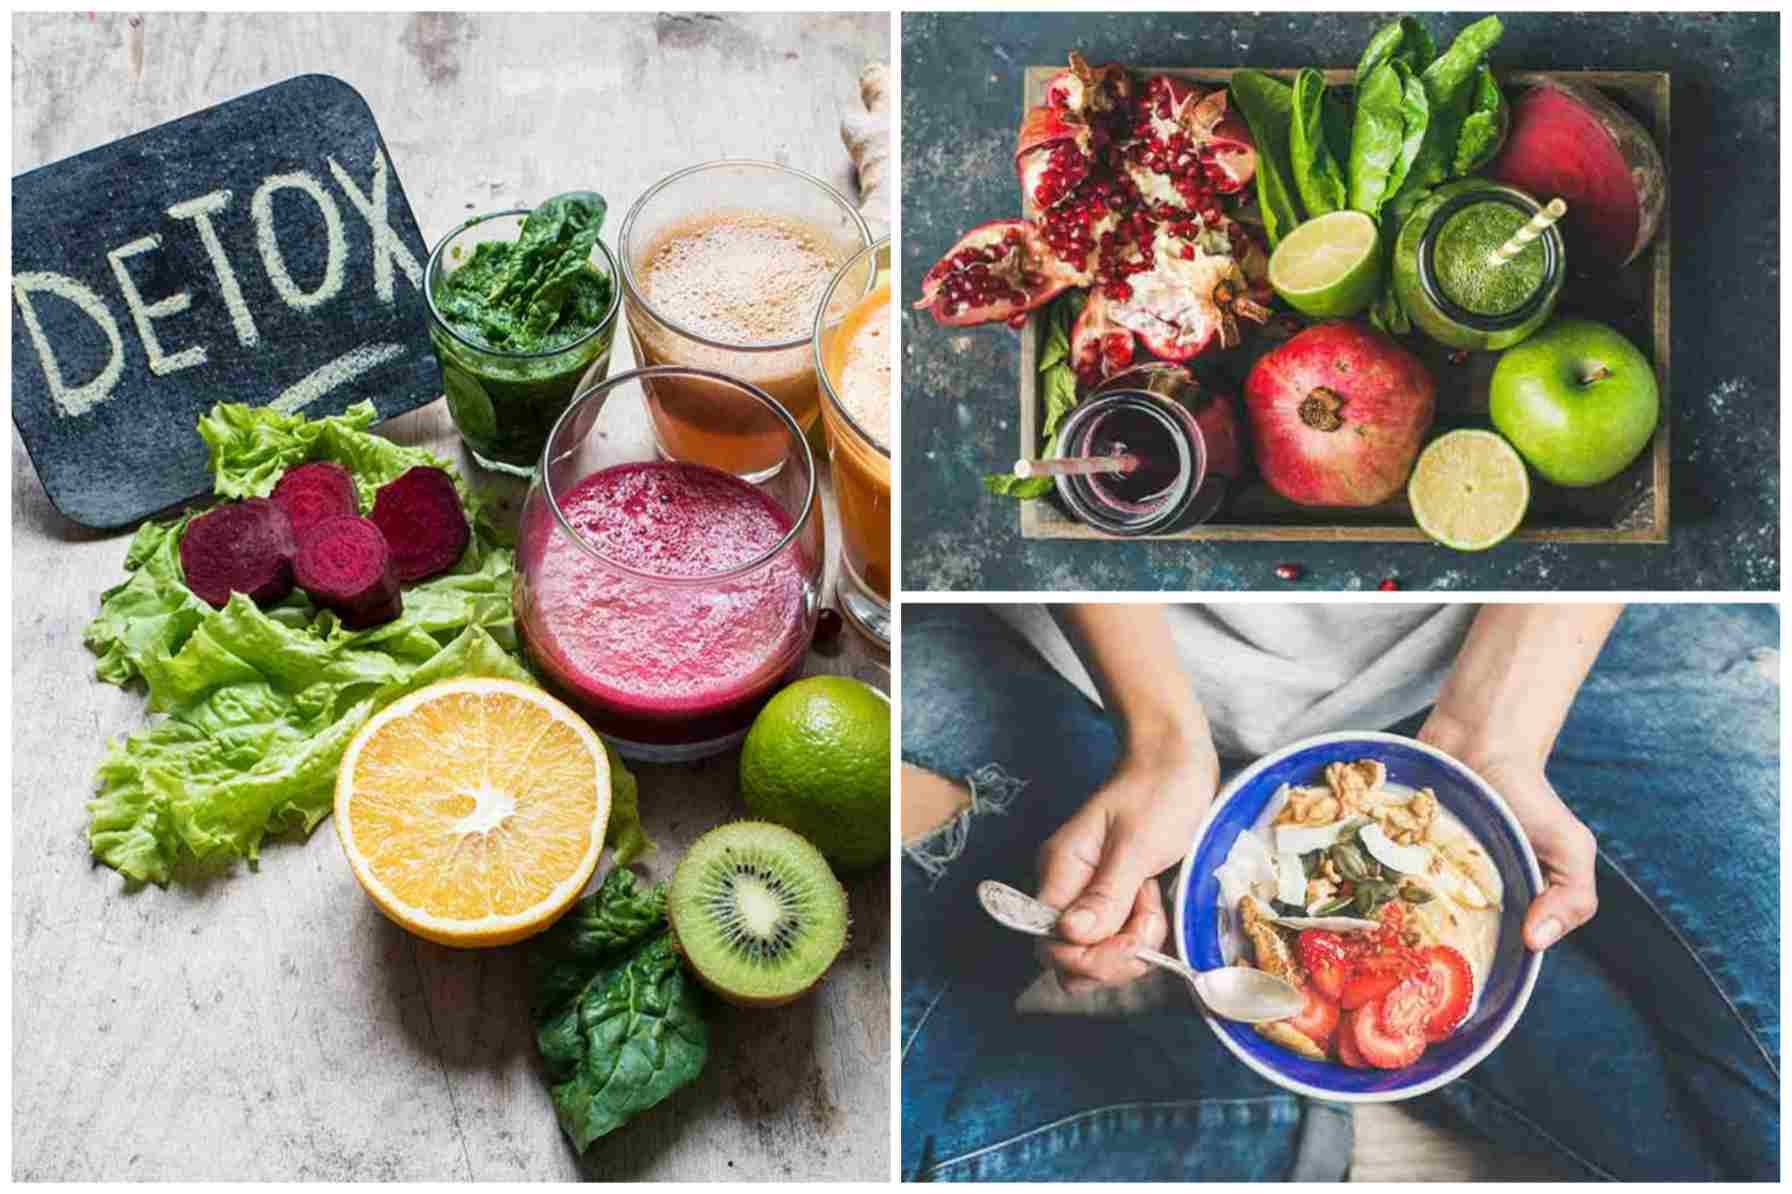 Các loại thức ăn, rau củ quả được nêu trong thực đơn ăn kiêng 7 ngày sẽ giúp cơ thể loại bỏ được các độc tố tích tụ lâu ngày, khiến cho quá trình giảm cân diễn ra hiệu quả. Ảnh: Stylecraze.